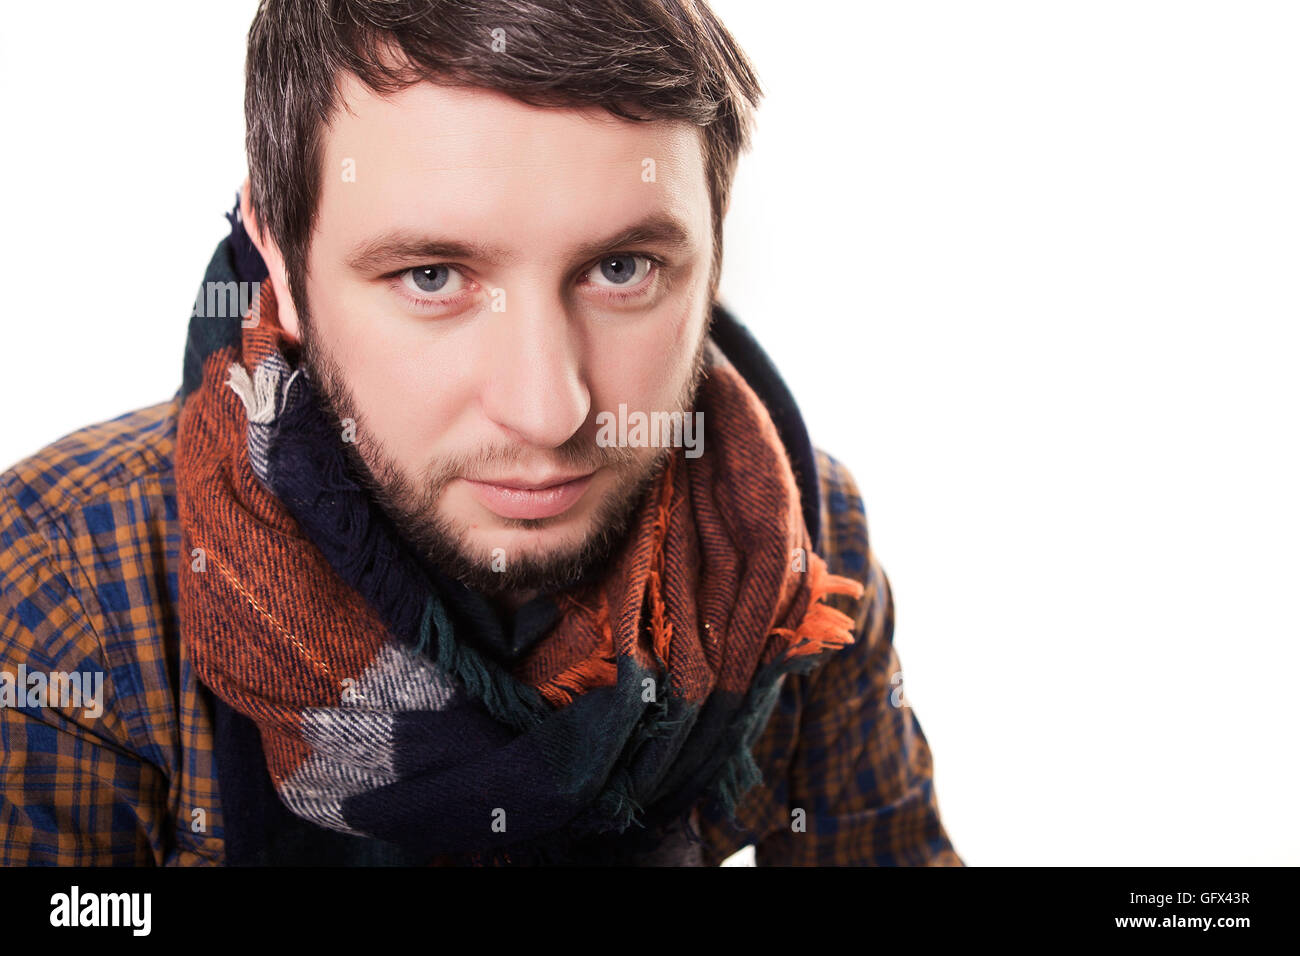 Артист в шарфе. Зарыться носом в шарф. Певец с шарфом. Фото с шарфом на голове парня.